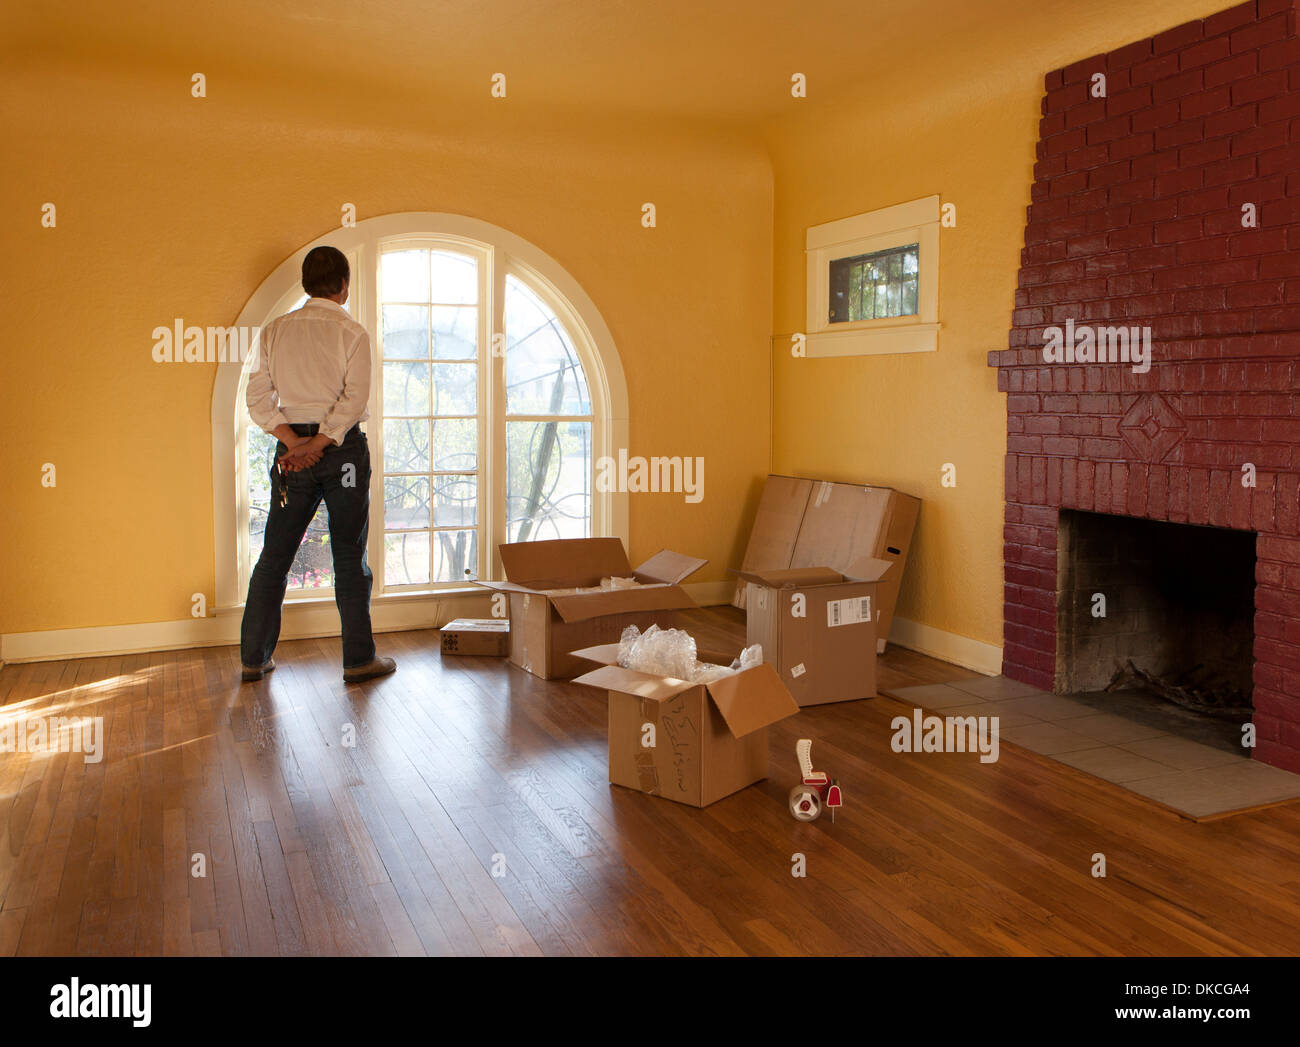 Un homme regarde par une salle vide dans une maison d'habitation et des boîtes en carton qu'il se déplace vers l'intérieur ou l'extérieur. Banque D'Images